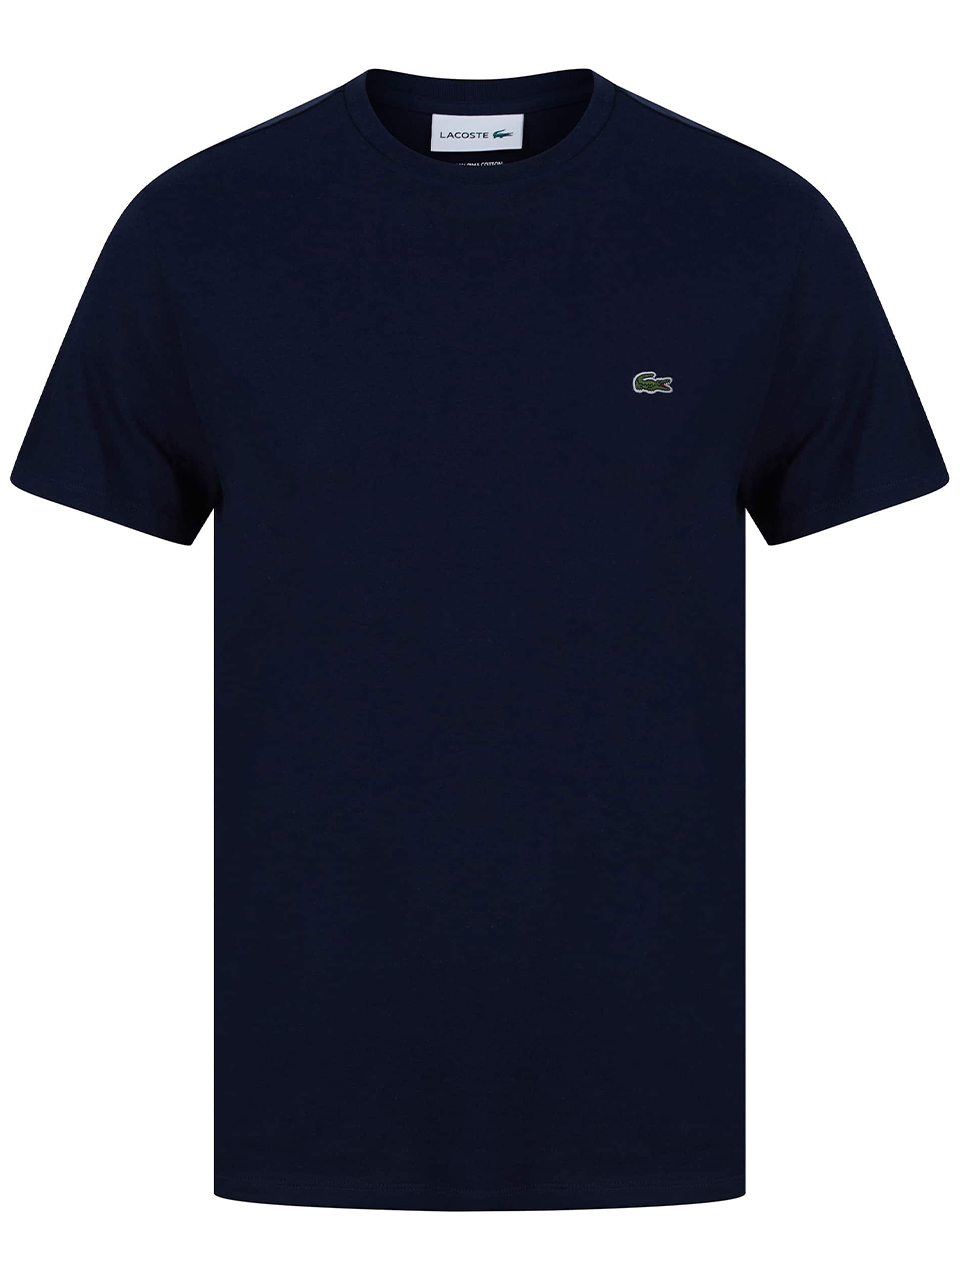 Imagem de: Camiseta Lacoste Azul com Logo